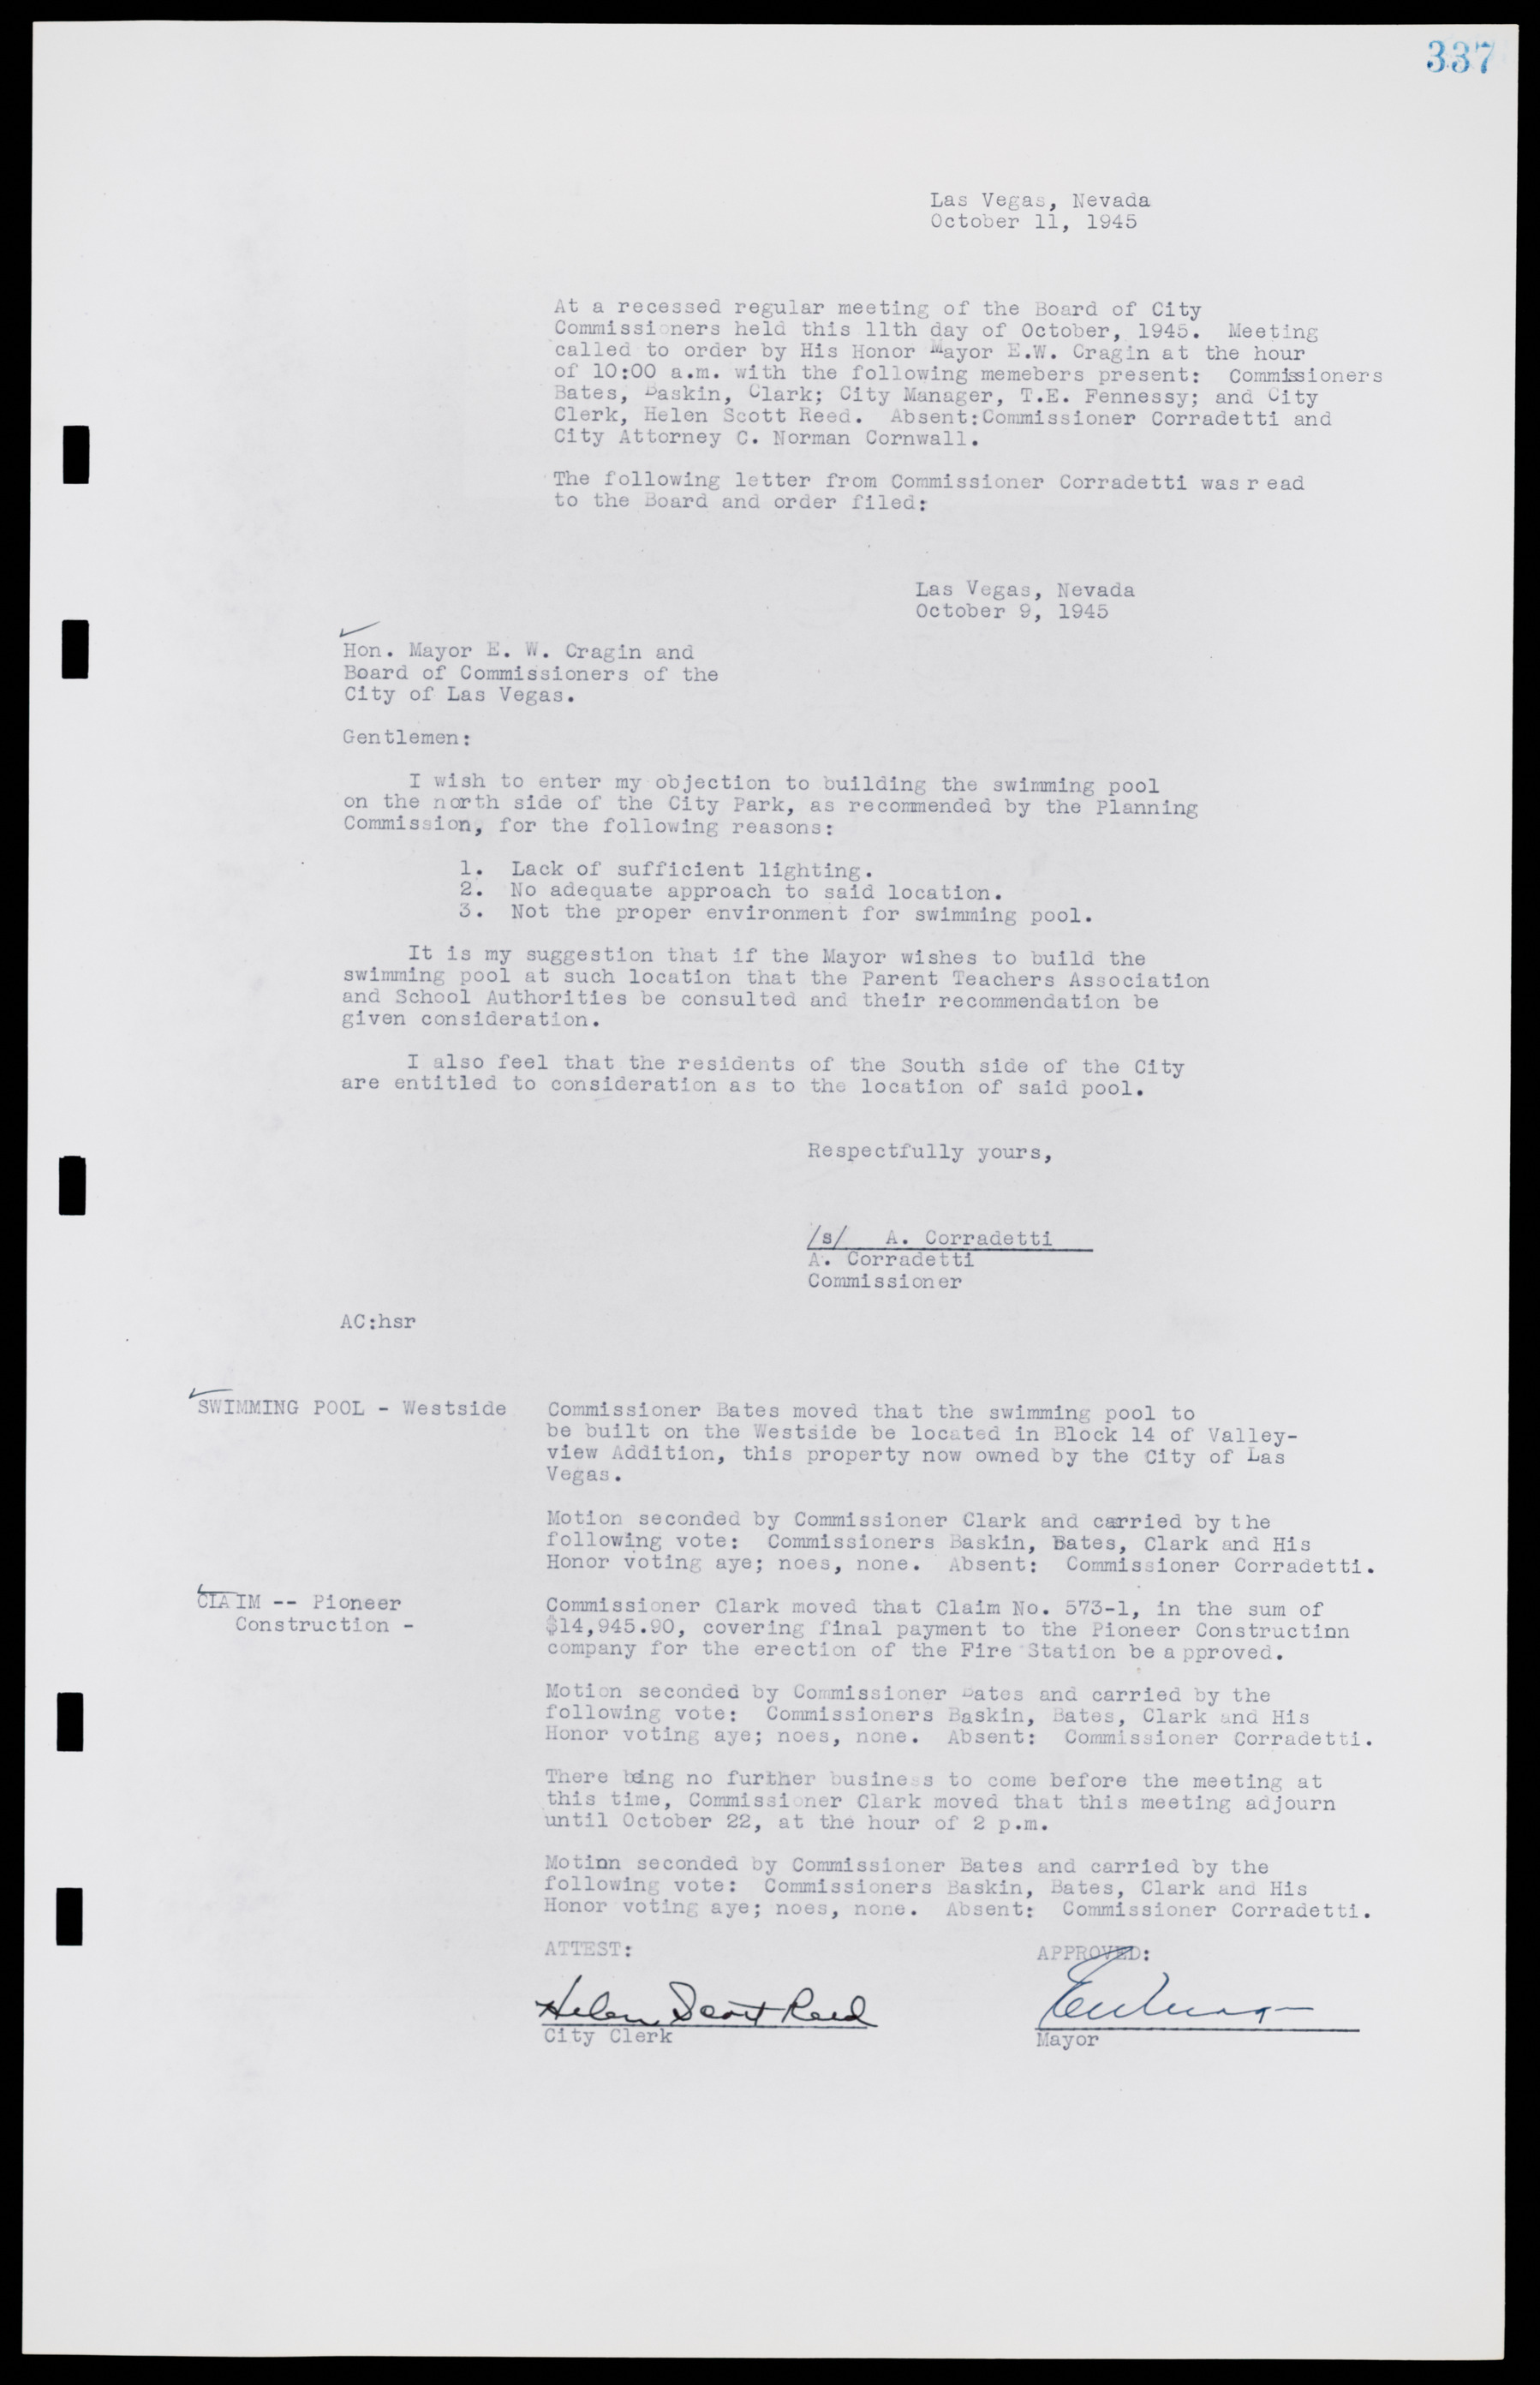 Las Vegas City Commission Minutes, August 11, 1942 to December 30, 1946, lvc000005-361